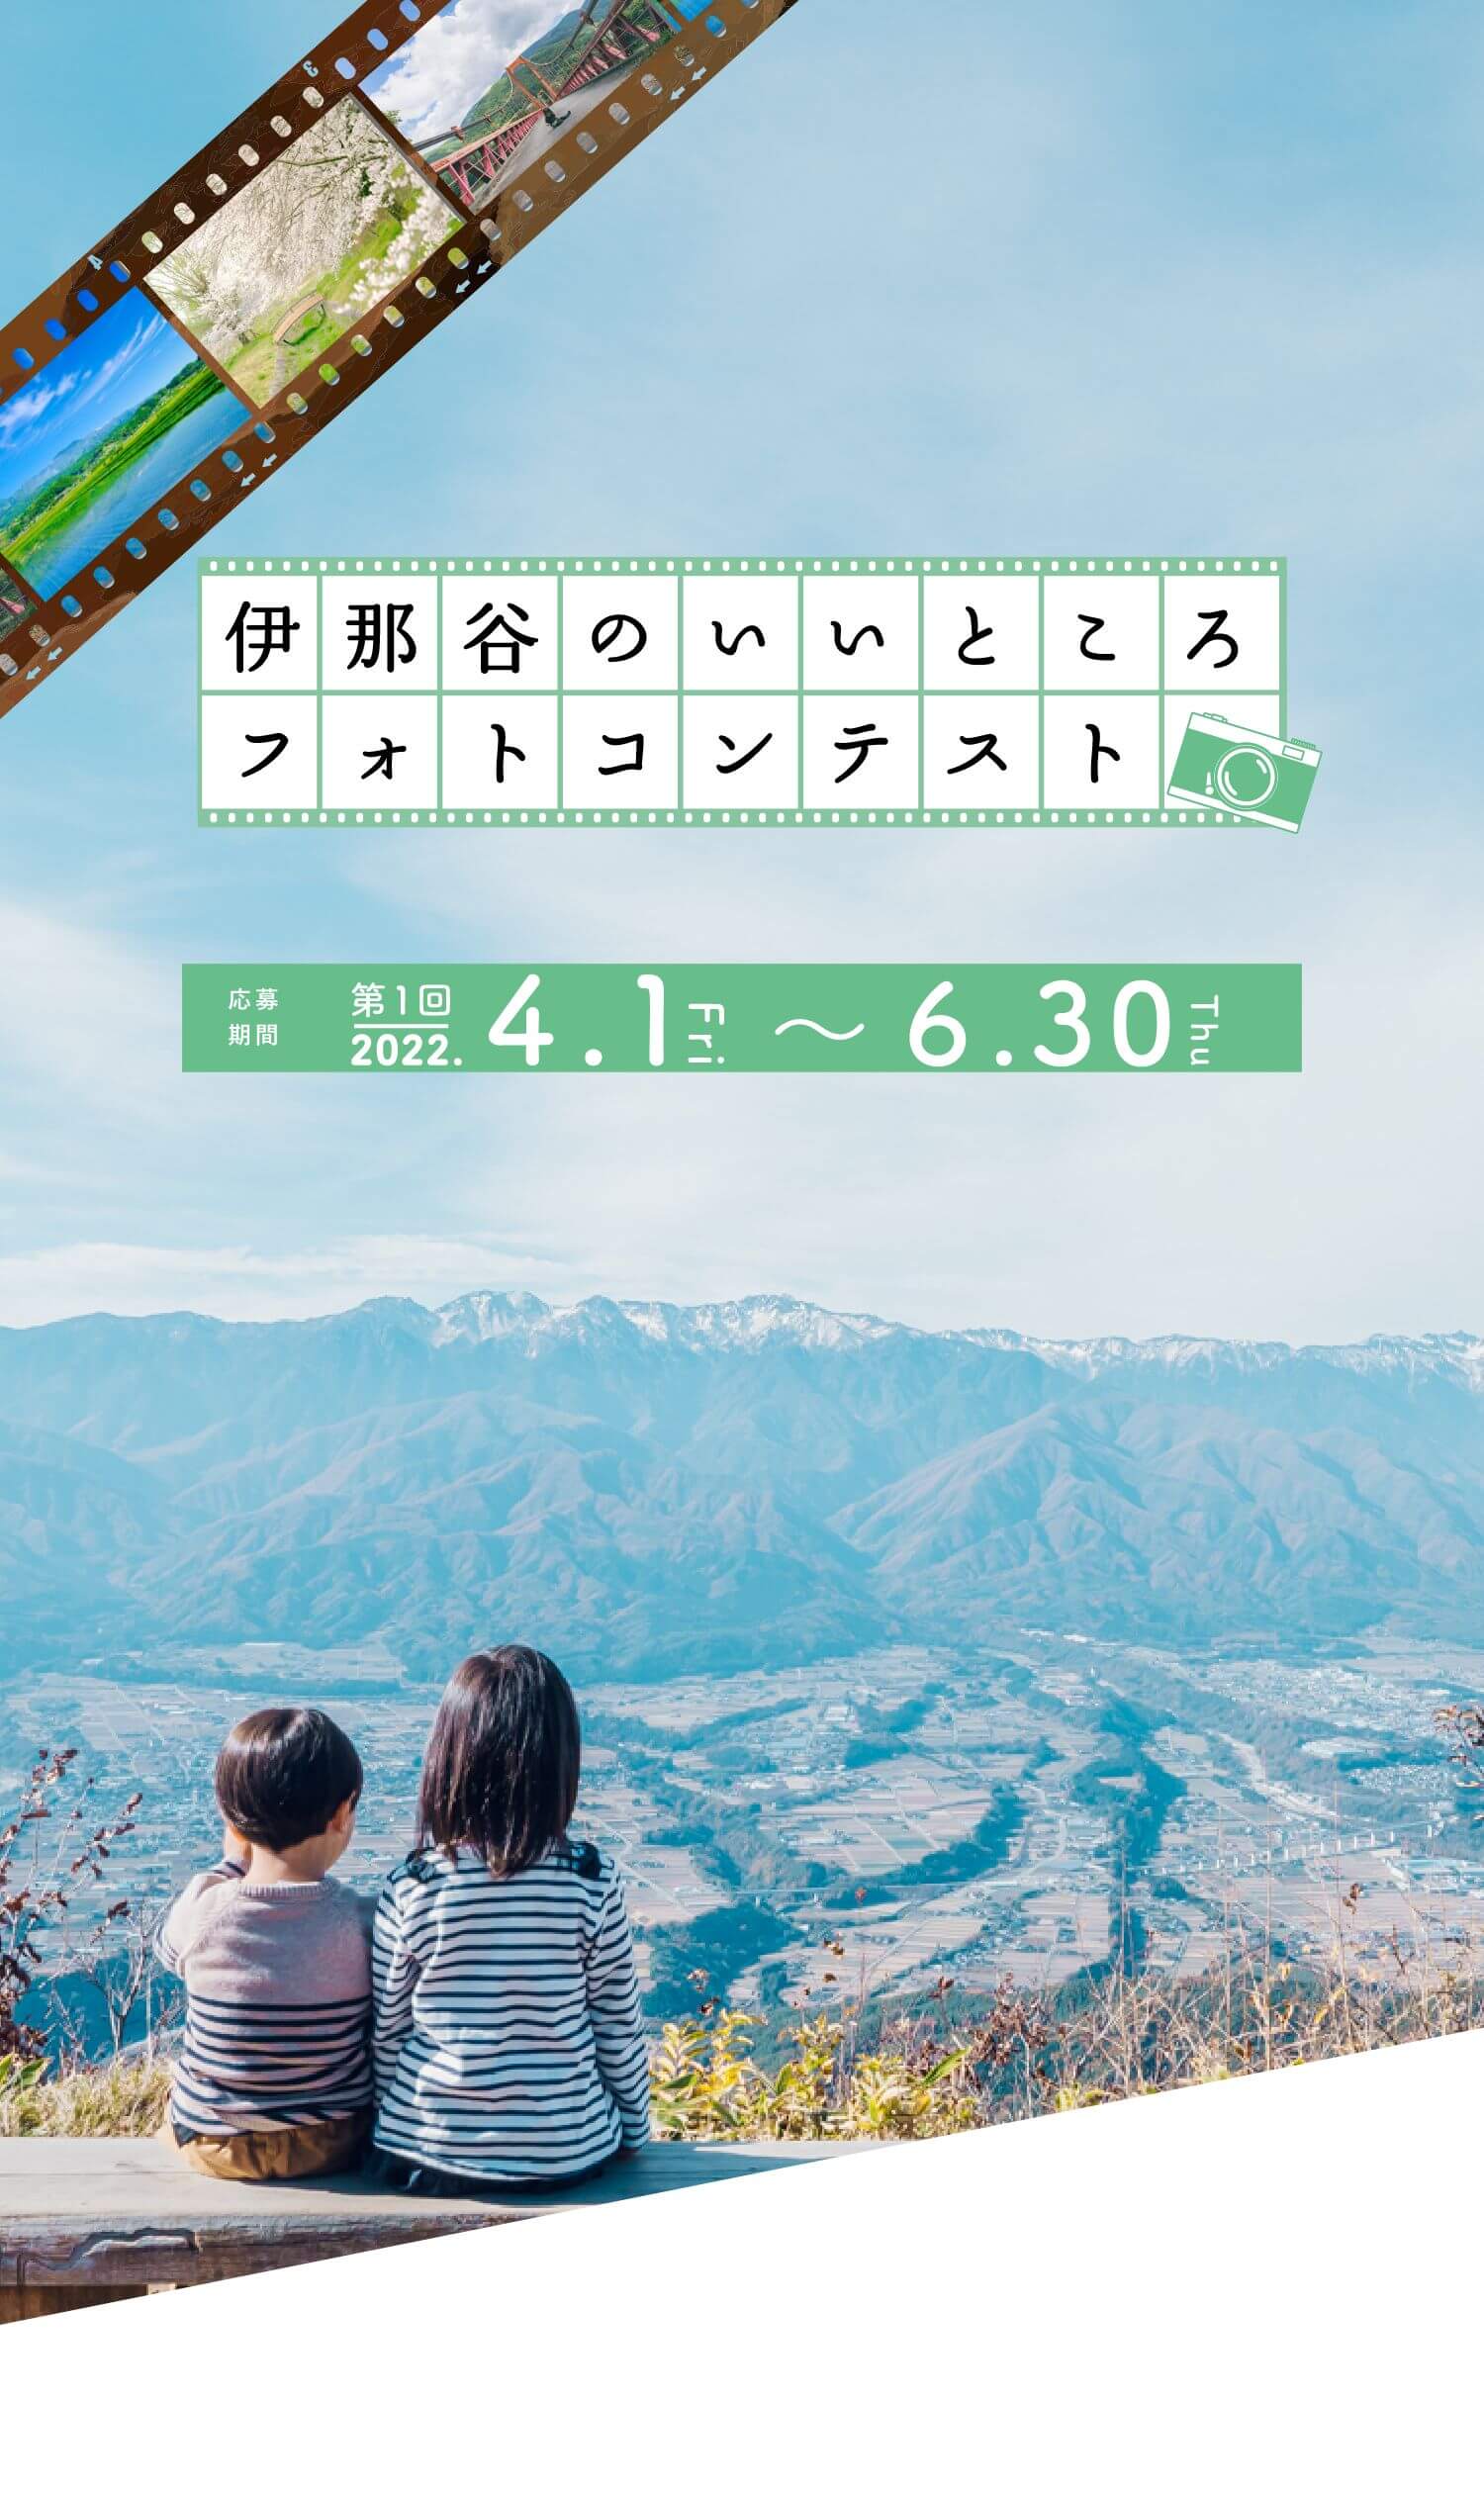 伊那谷のいいところフォトコンテスト Go Nagano 長野県公式観光サイト